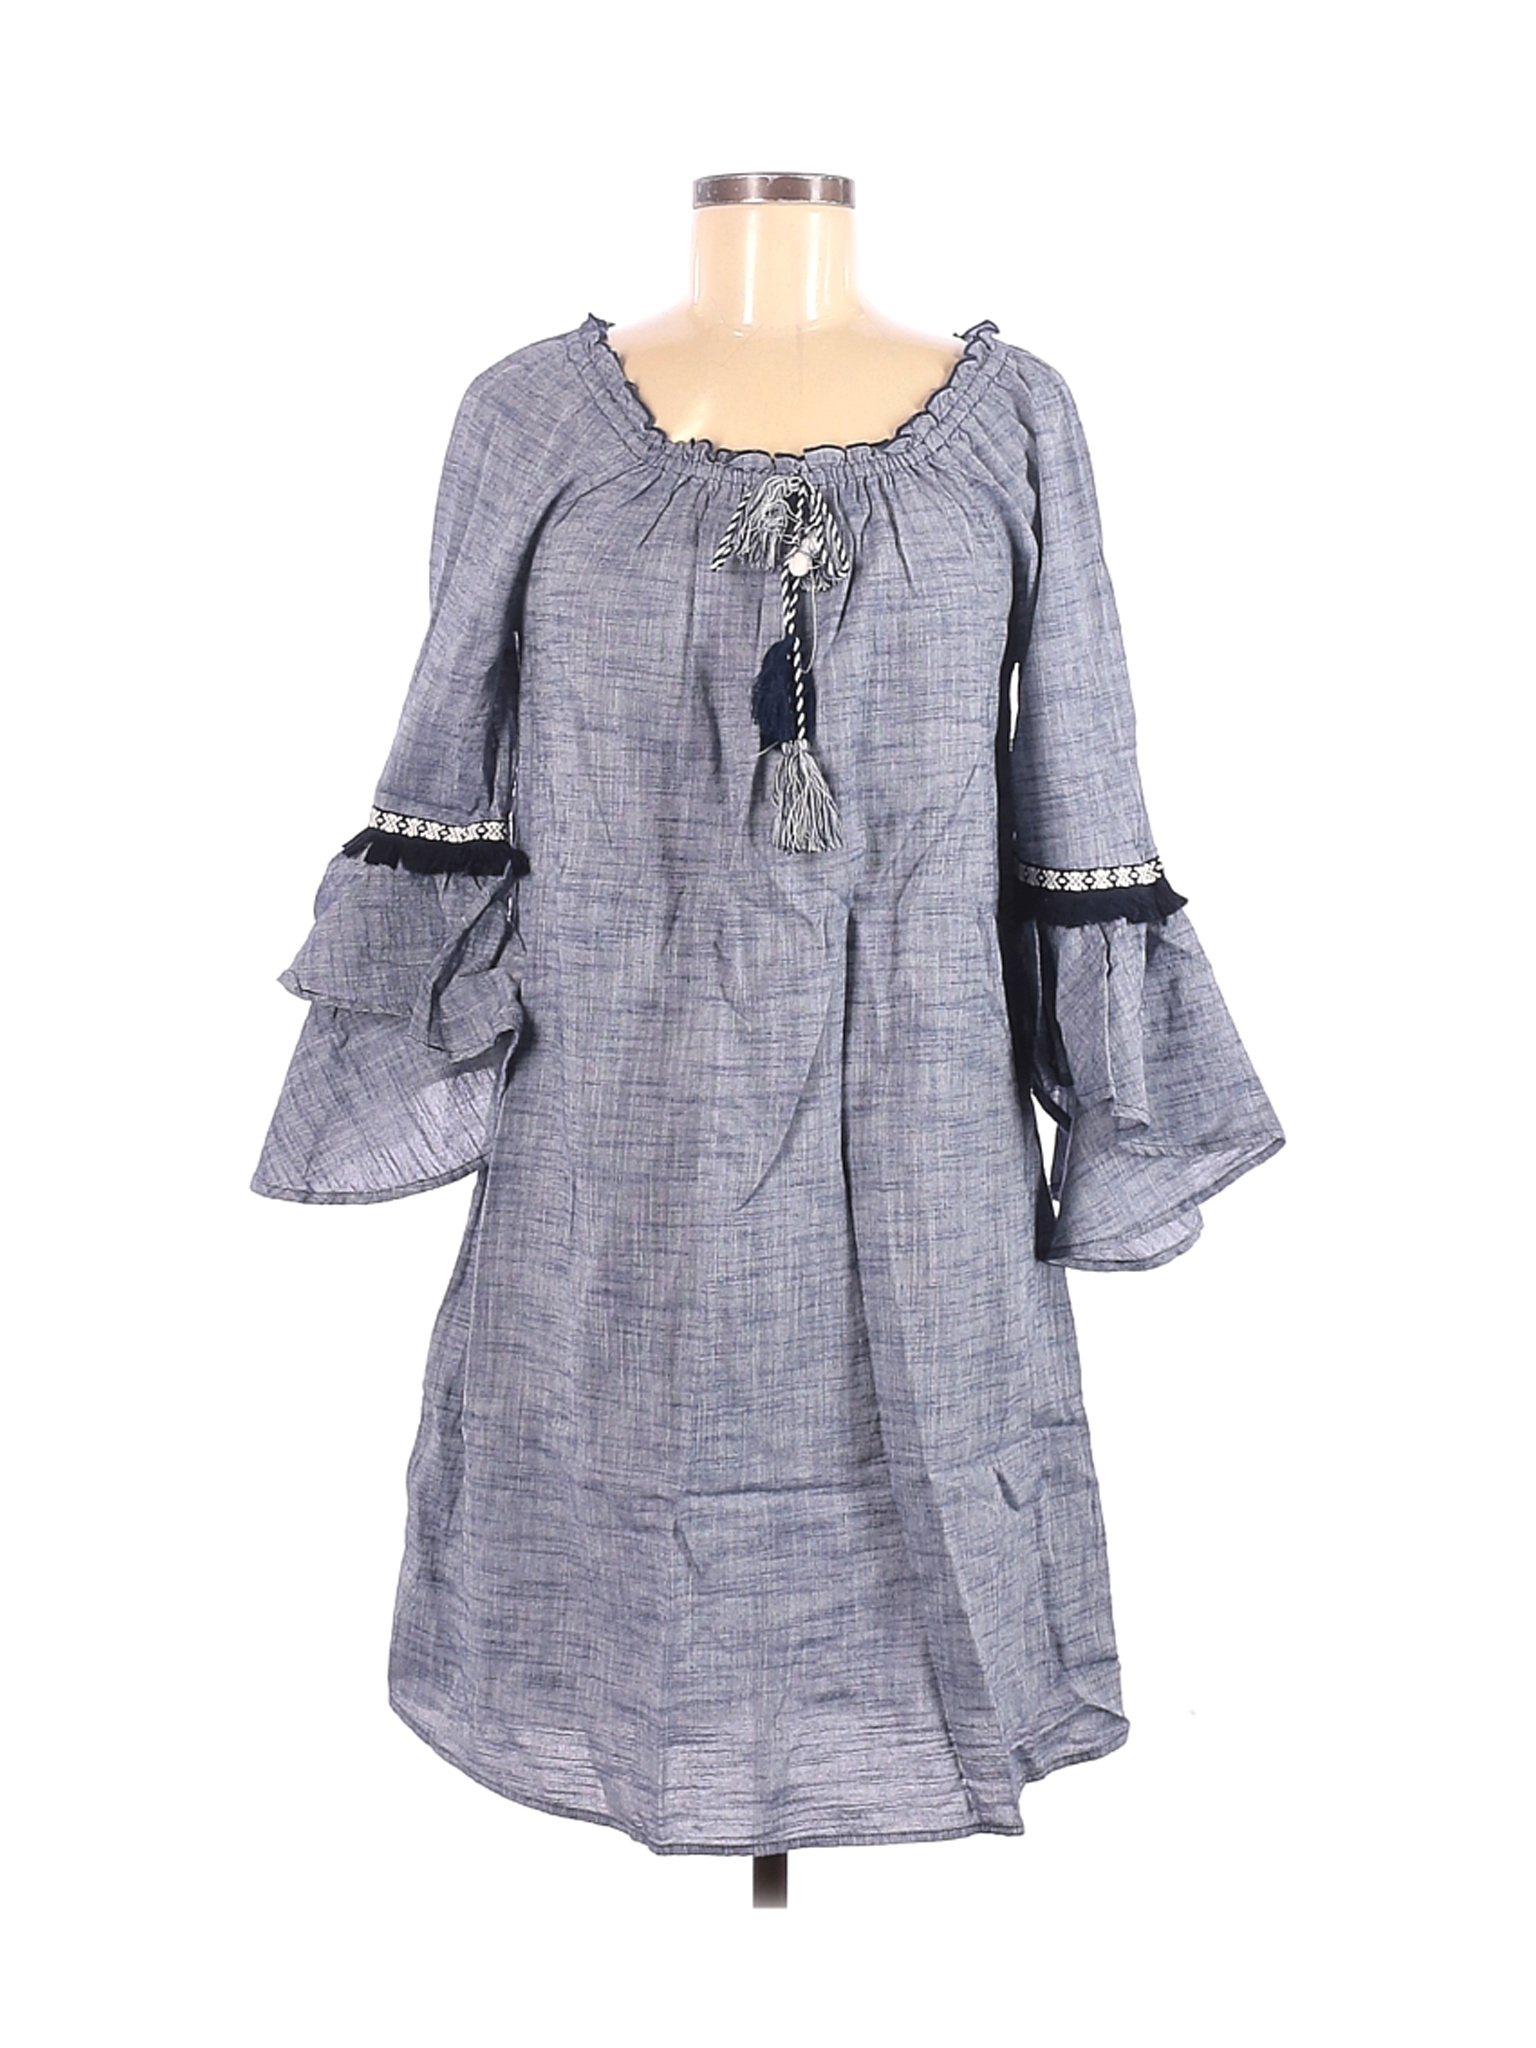 Style&Co Women Gray Casual Dress S | eBay